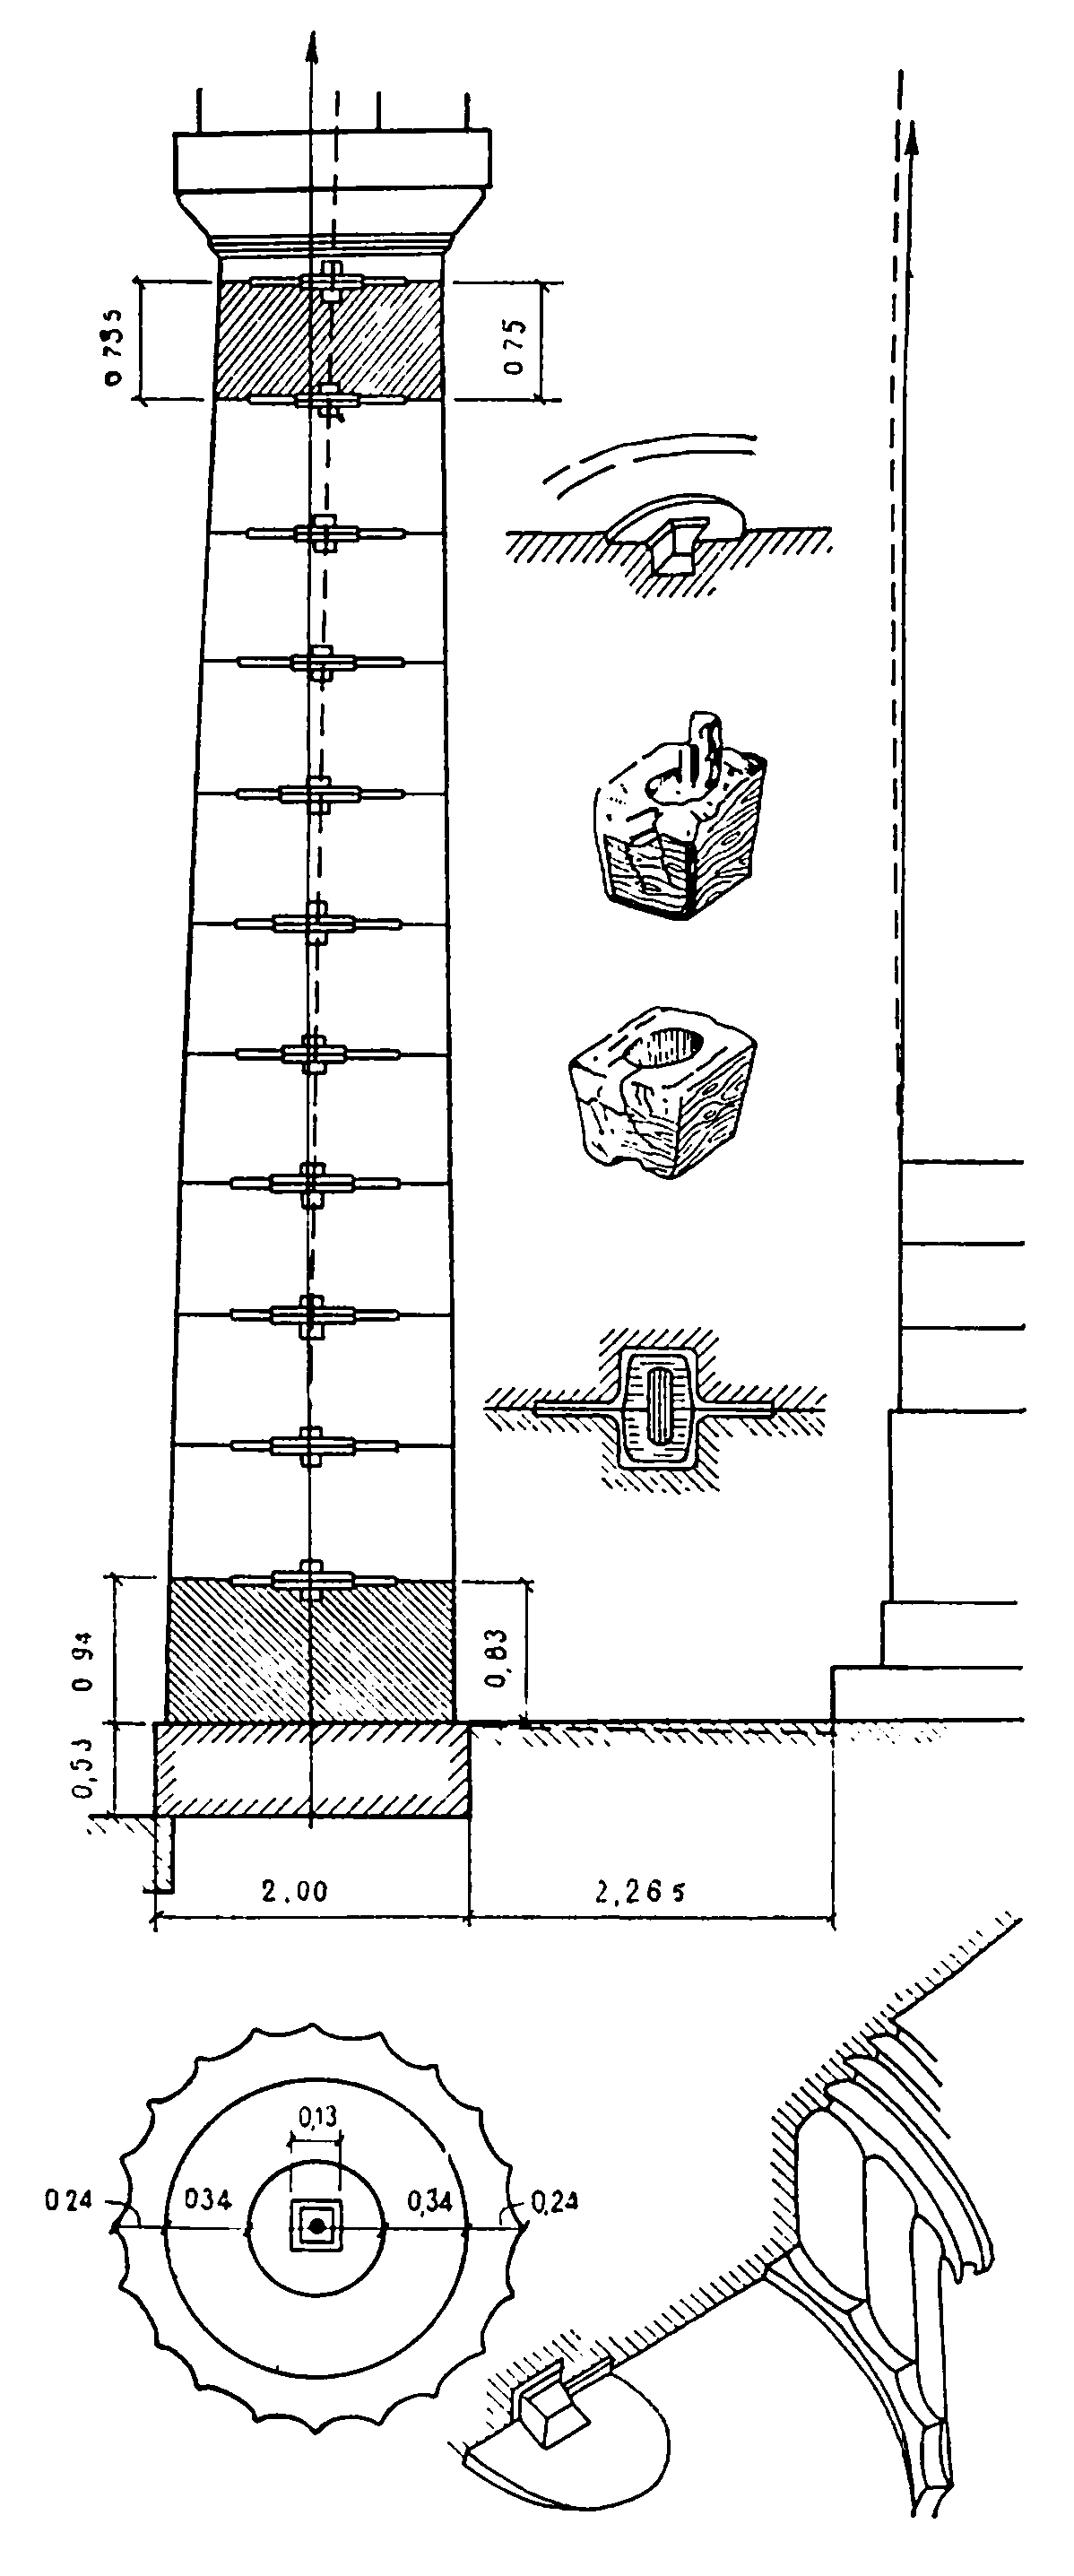 3. Схема конструкции угловой наклонной колонны, соединение барабанов ствола посредством деревянных штырей с муфтами (Парфенон) и притеска камней по периметру